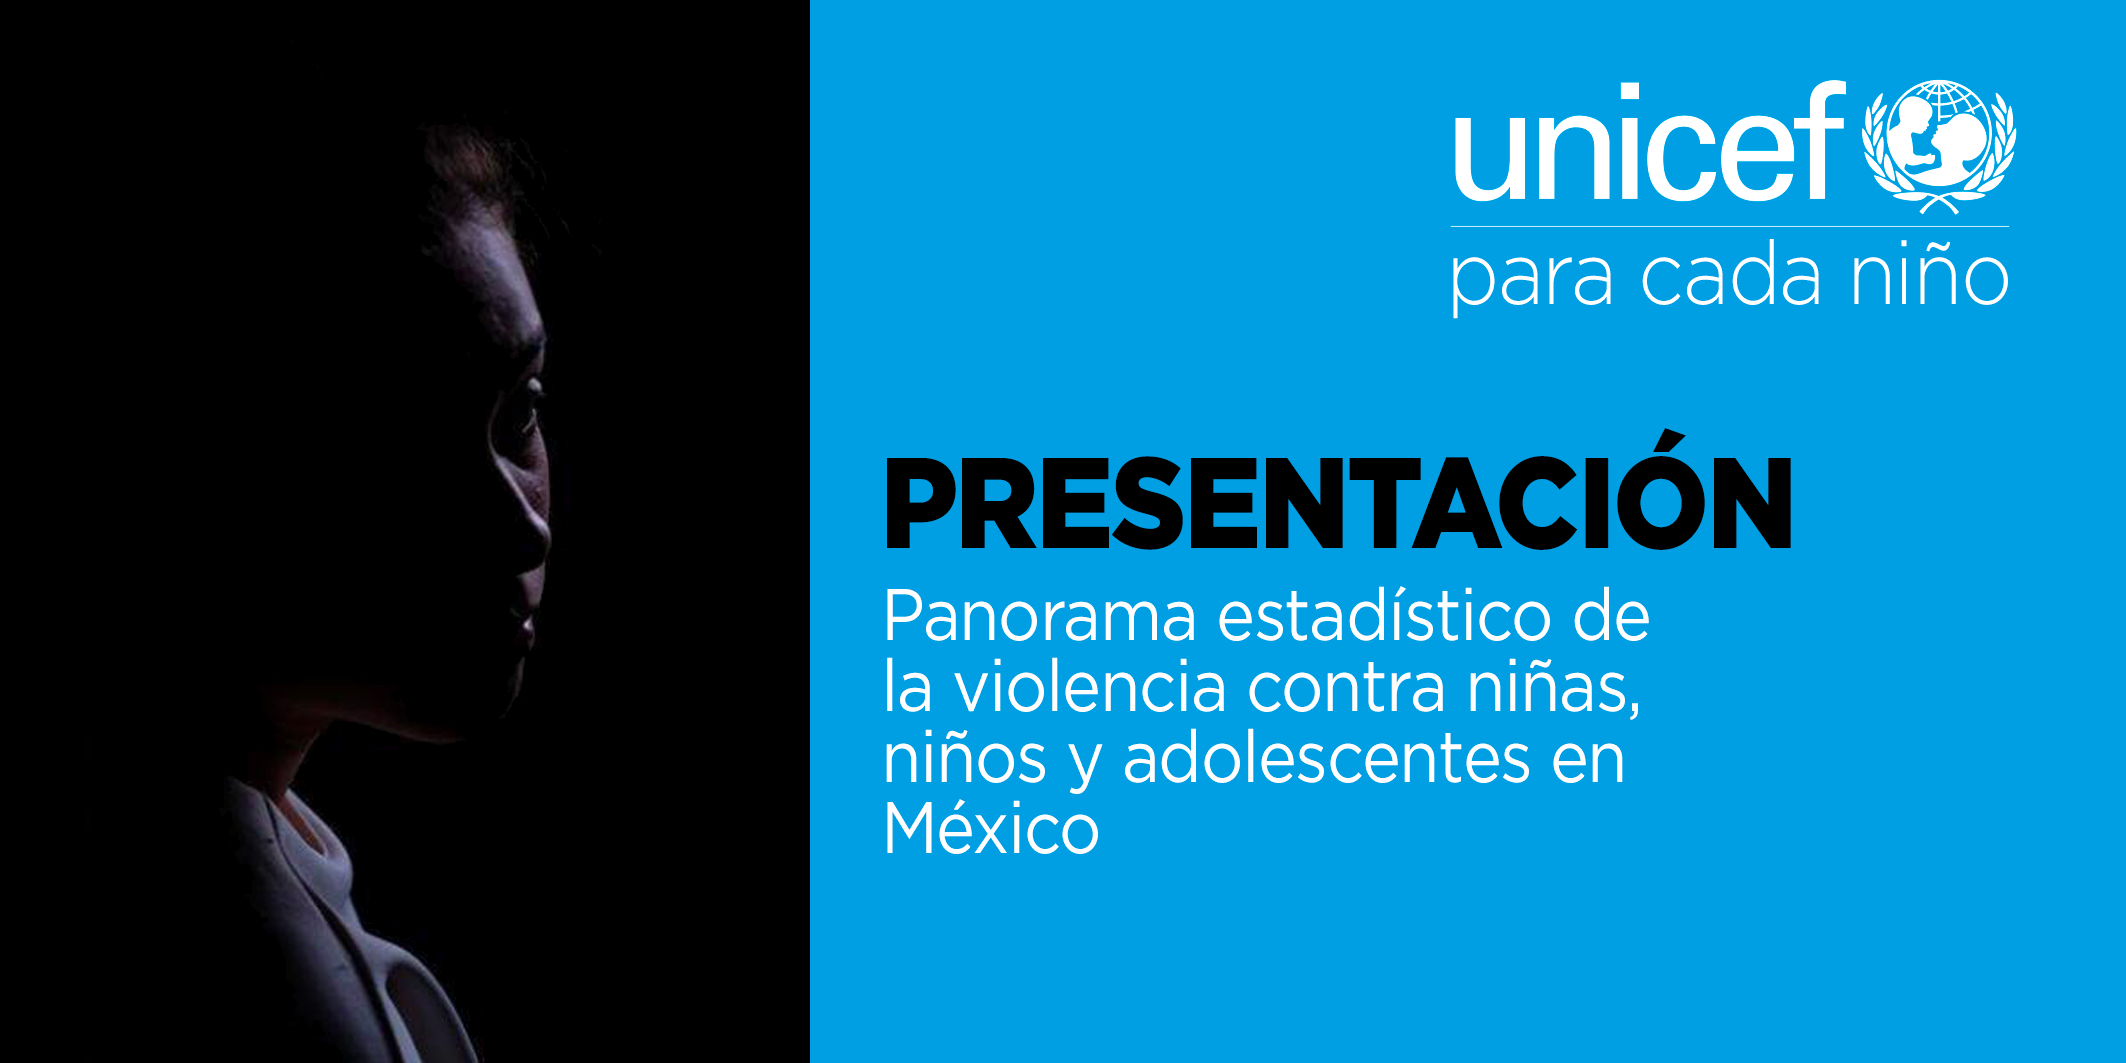 Presentación del Panorama estadístico de la violencia contra niñas, niños y adolescentes en México. @ CDHDF